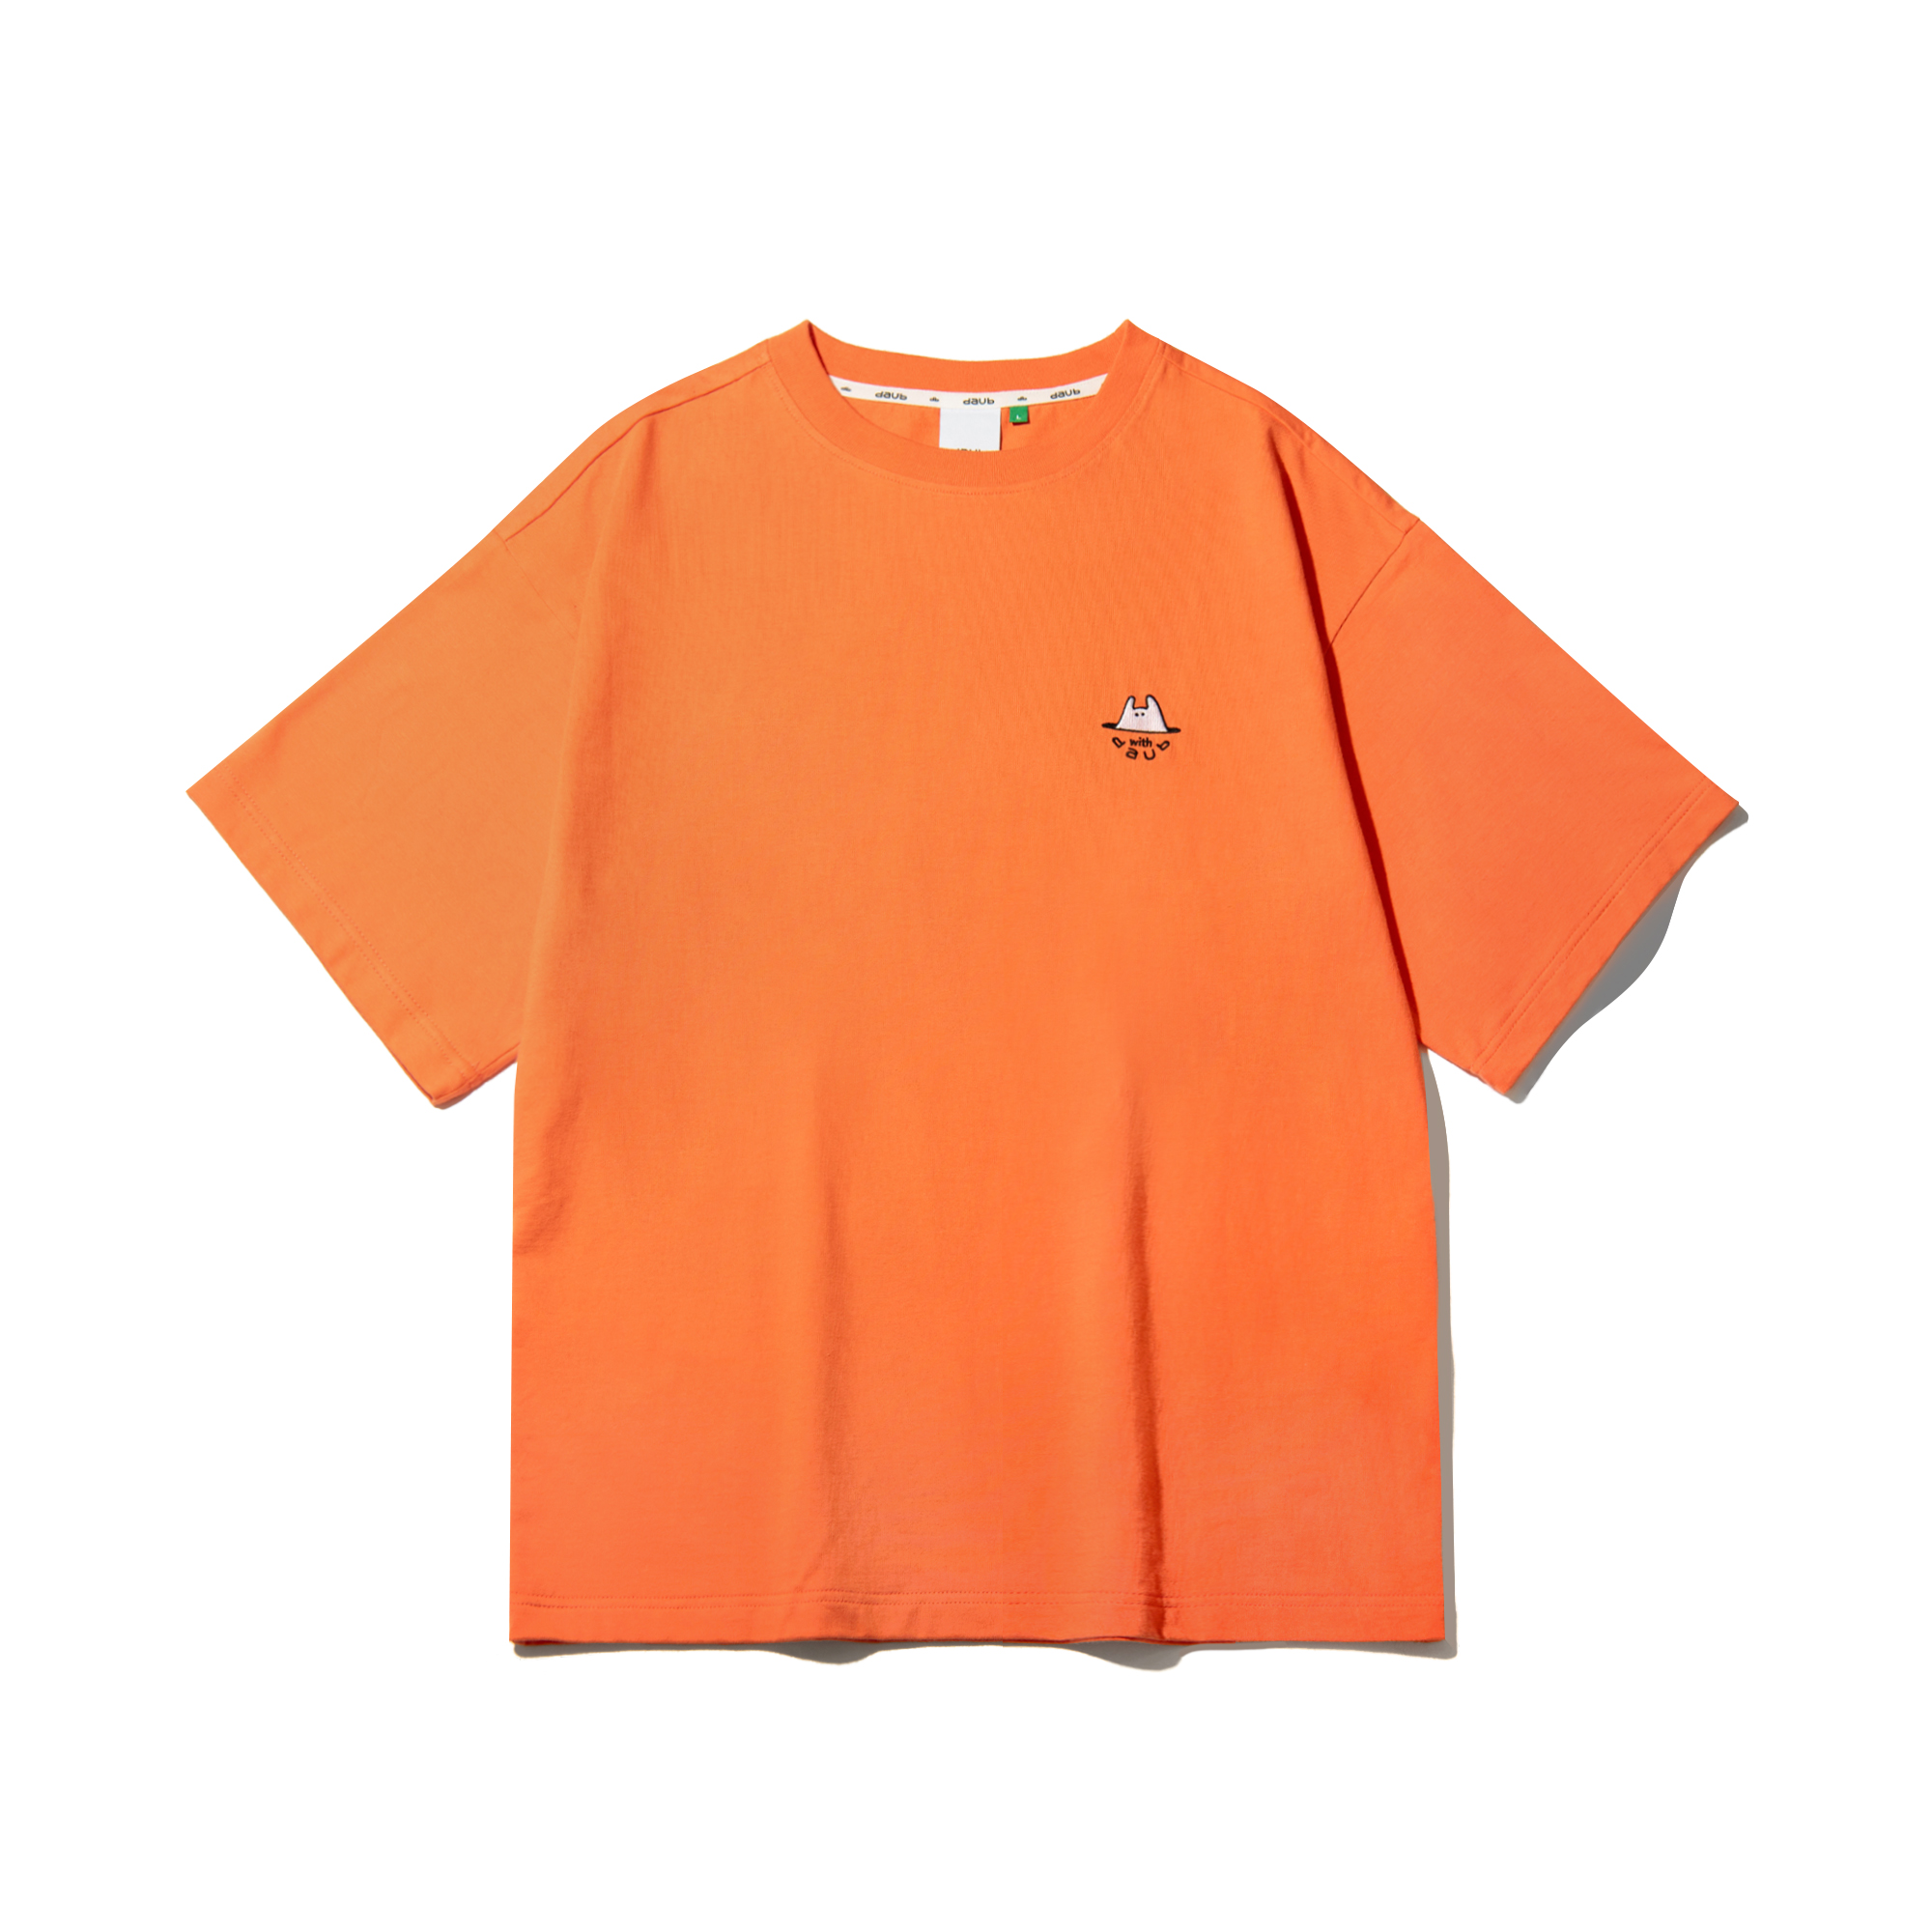 DAUB 유니 라인웨이브 티셔츠 오렌지